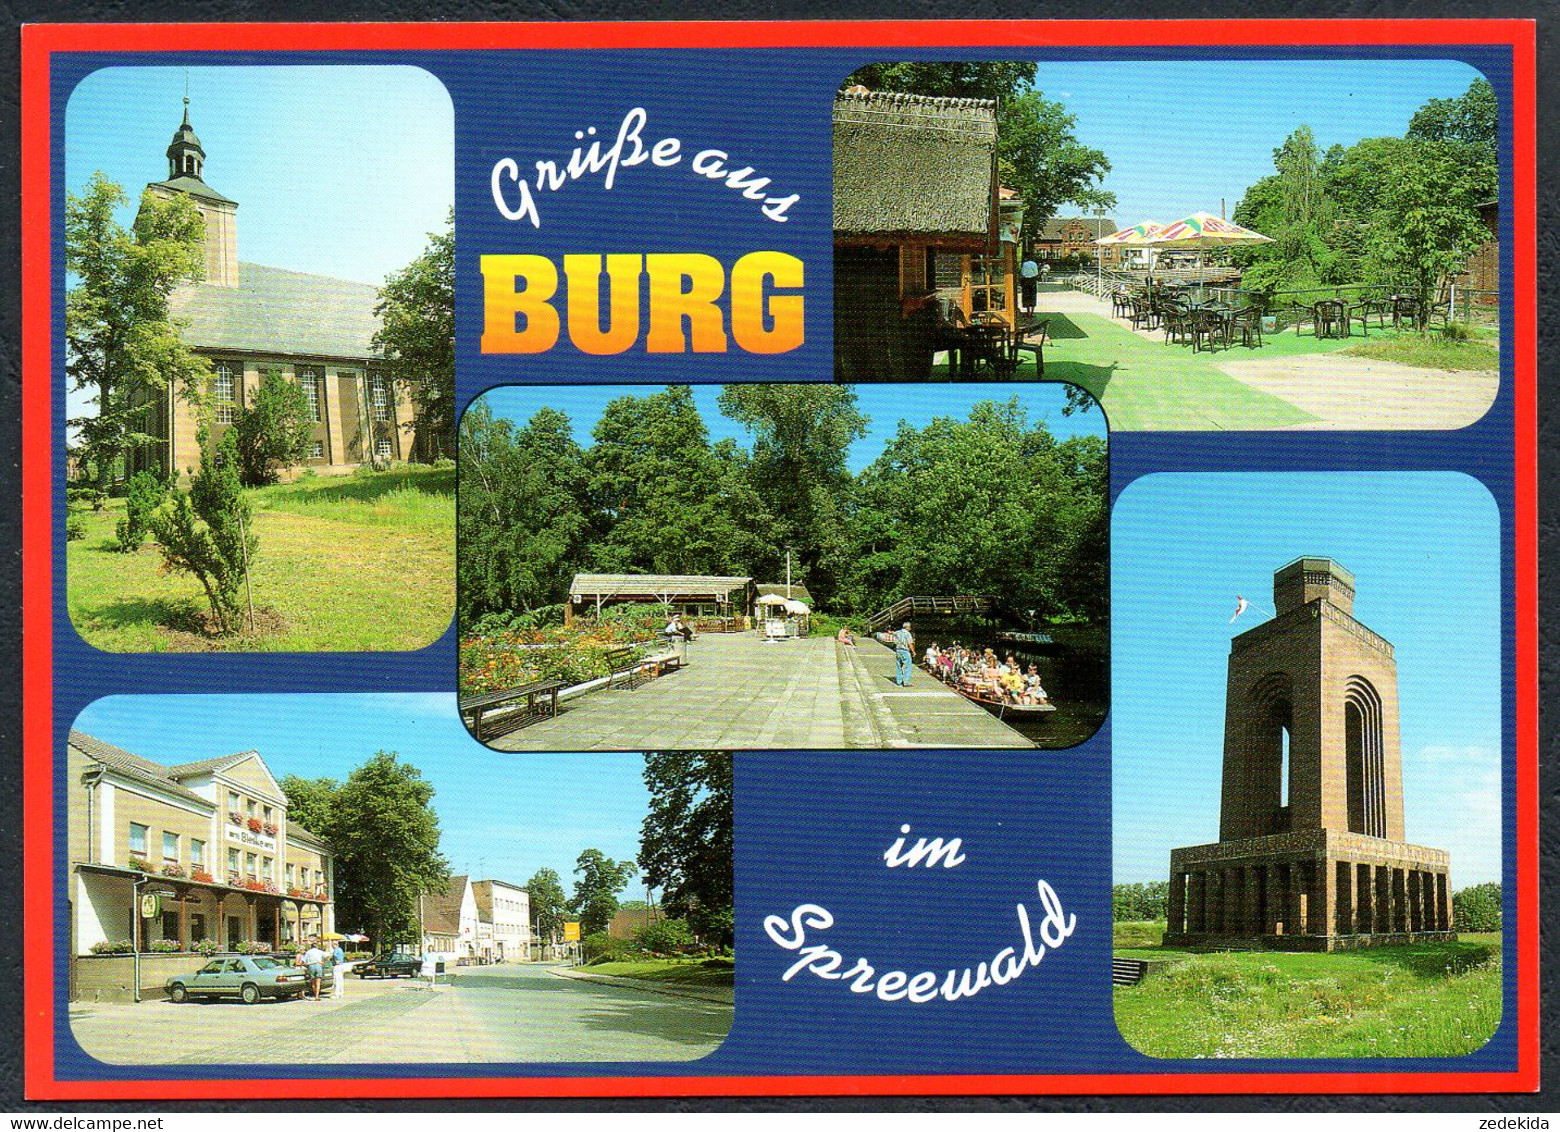 E5271 - TOP Burg - Bild Und Heimat Reichenbach Qualitätskarte - Burg (Spreewald)